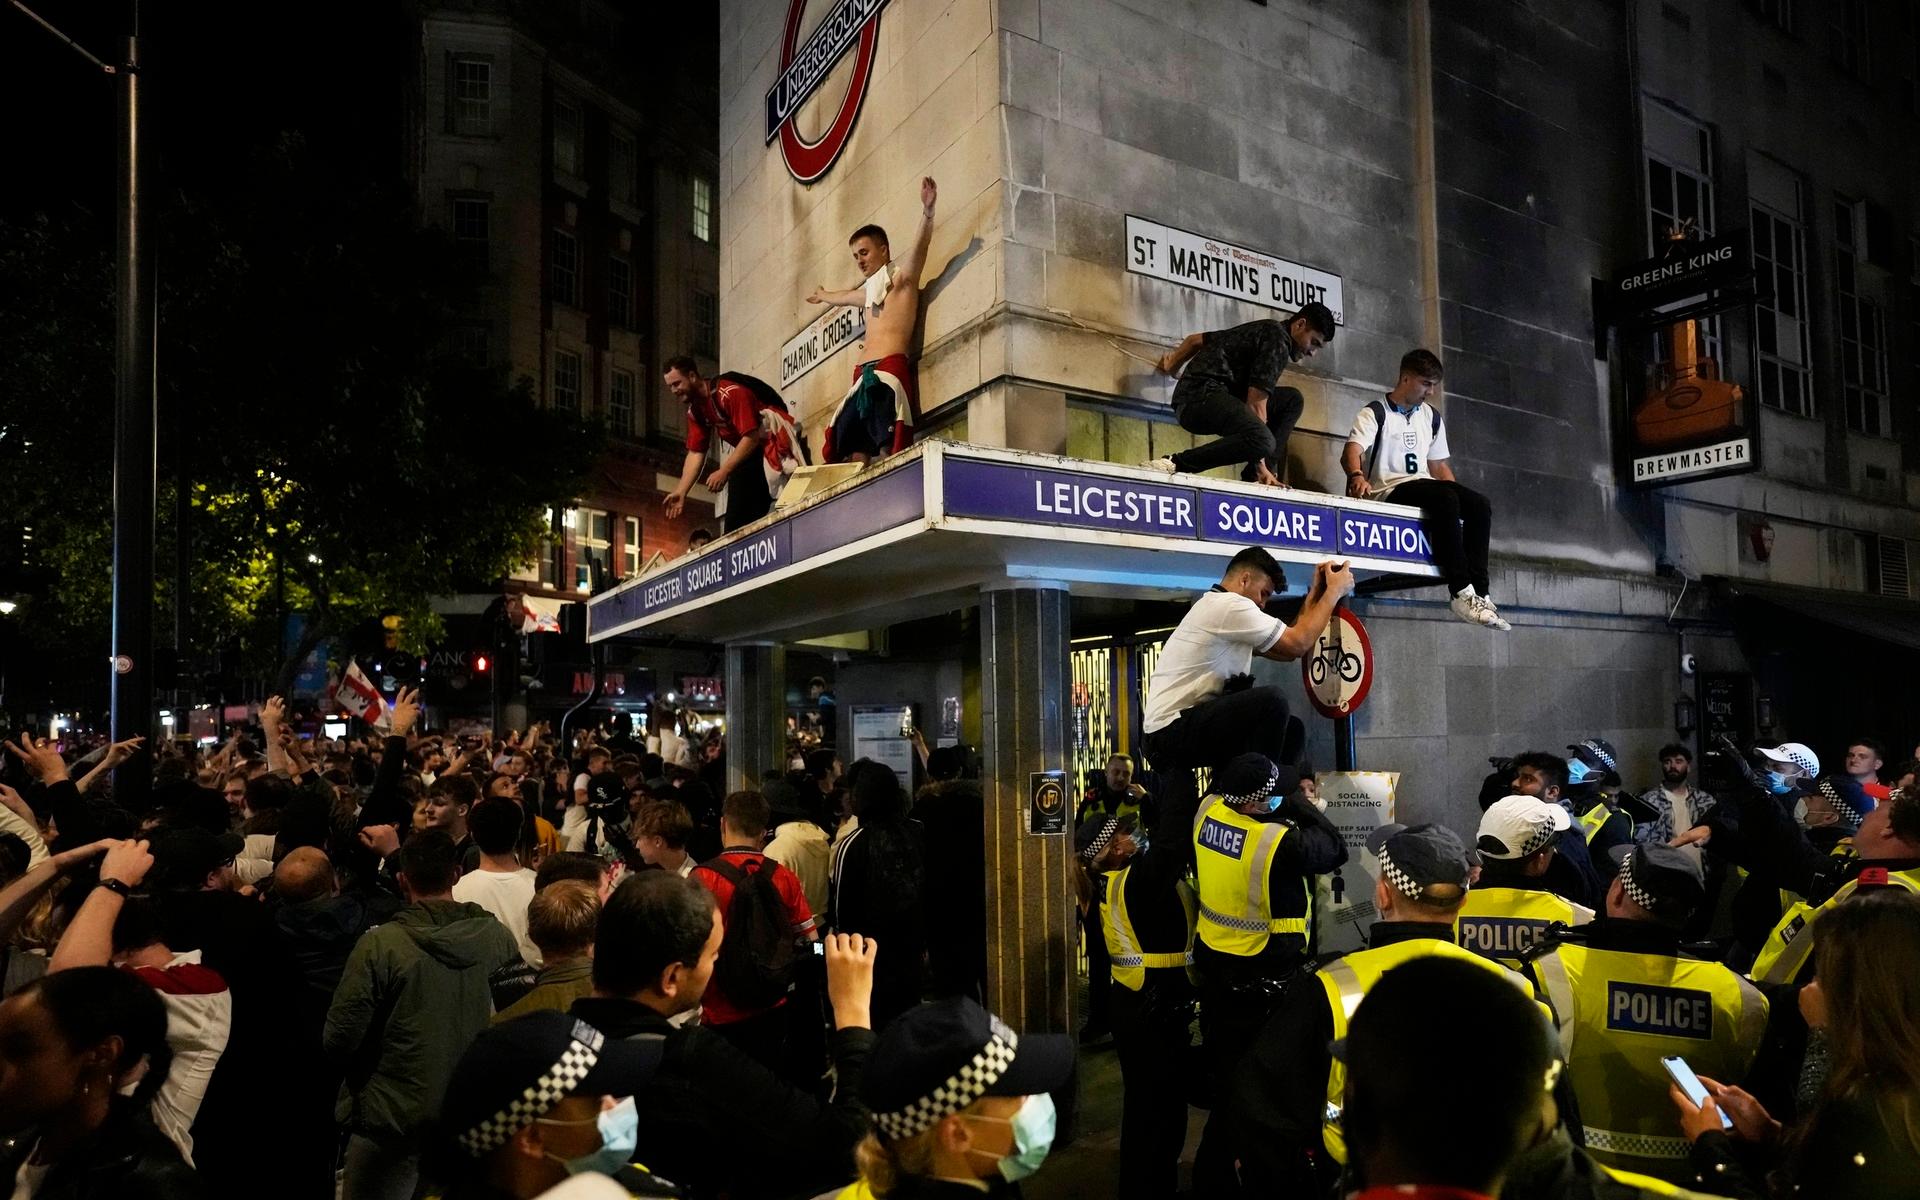 Andra supportrar klättrade upp på taket av tunnelbanestationen vid Leicester Square efter onsdagens vinst.